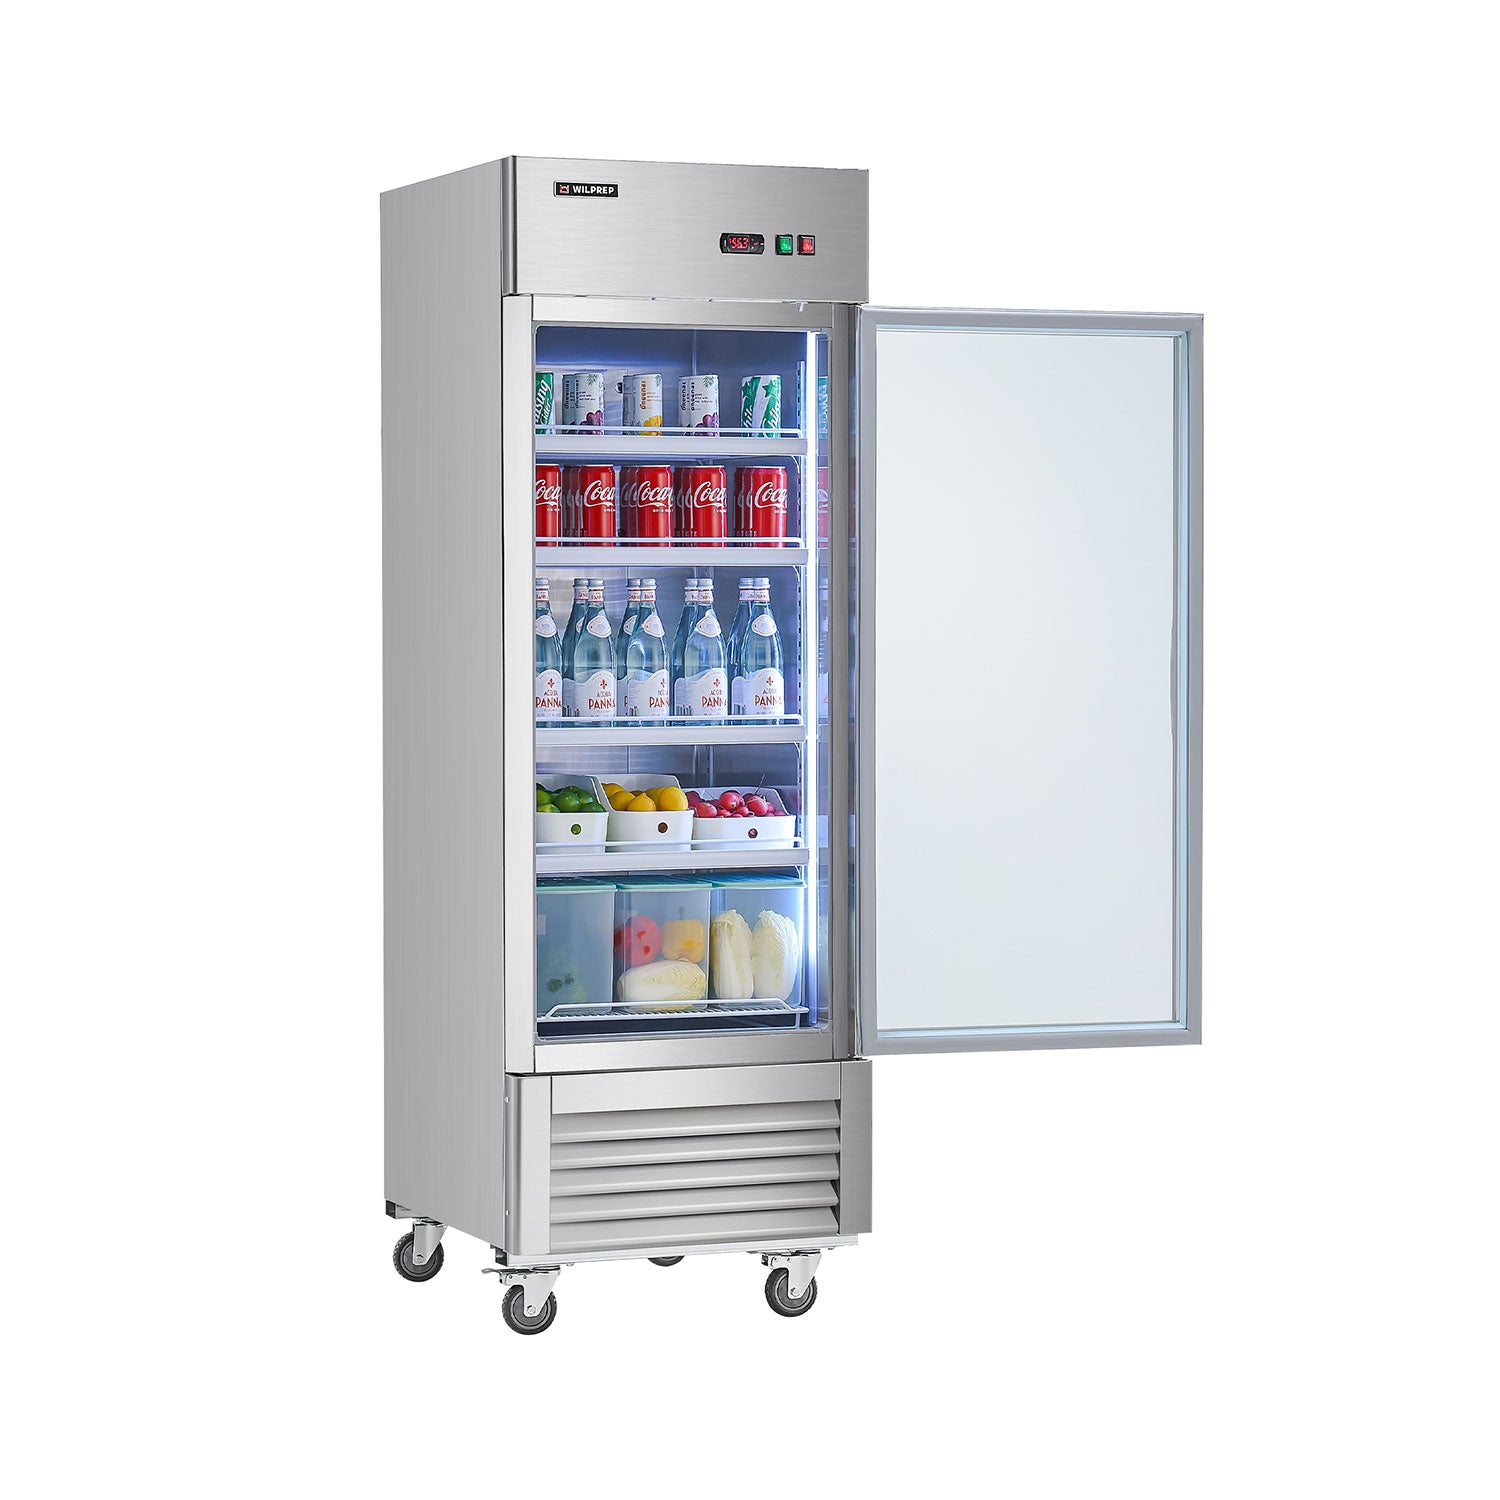 Wilprep 27-inch single door commercial refrigerator